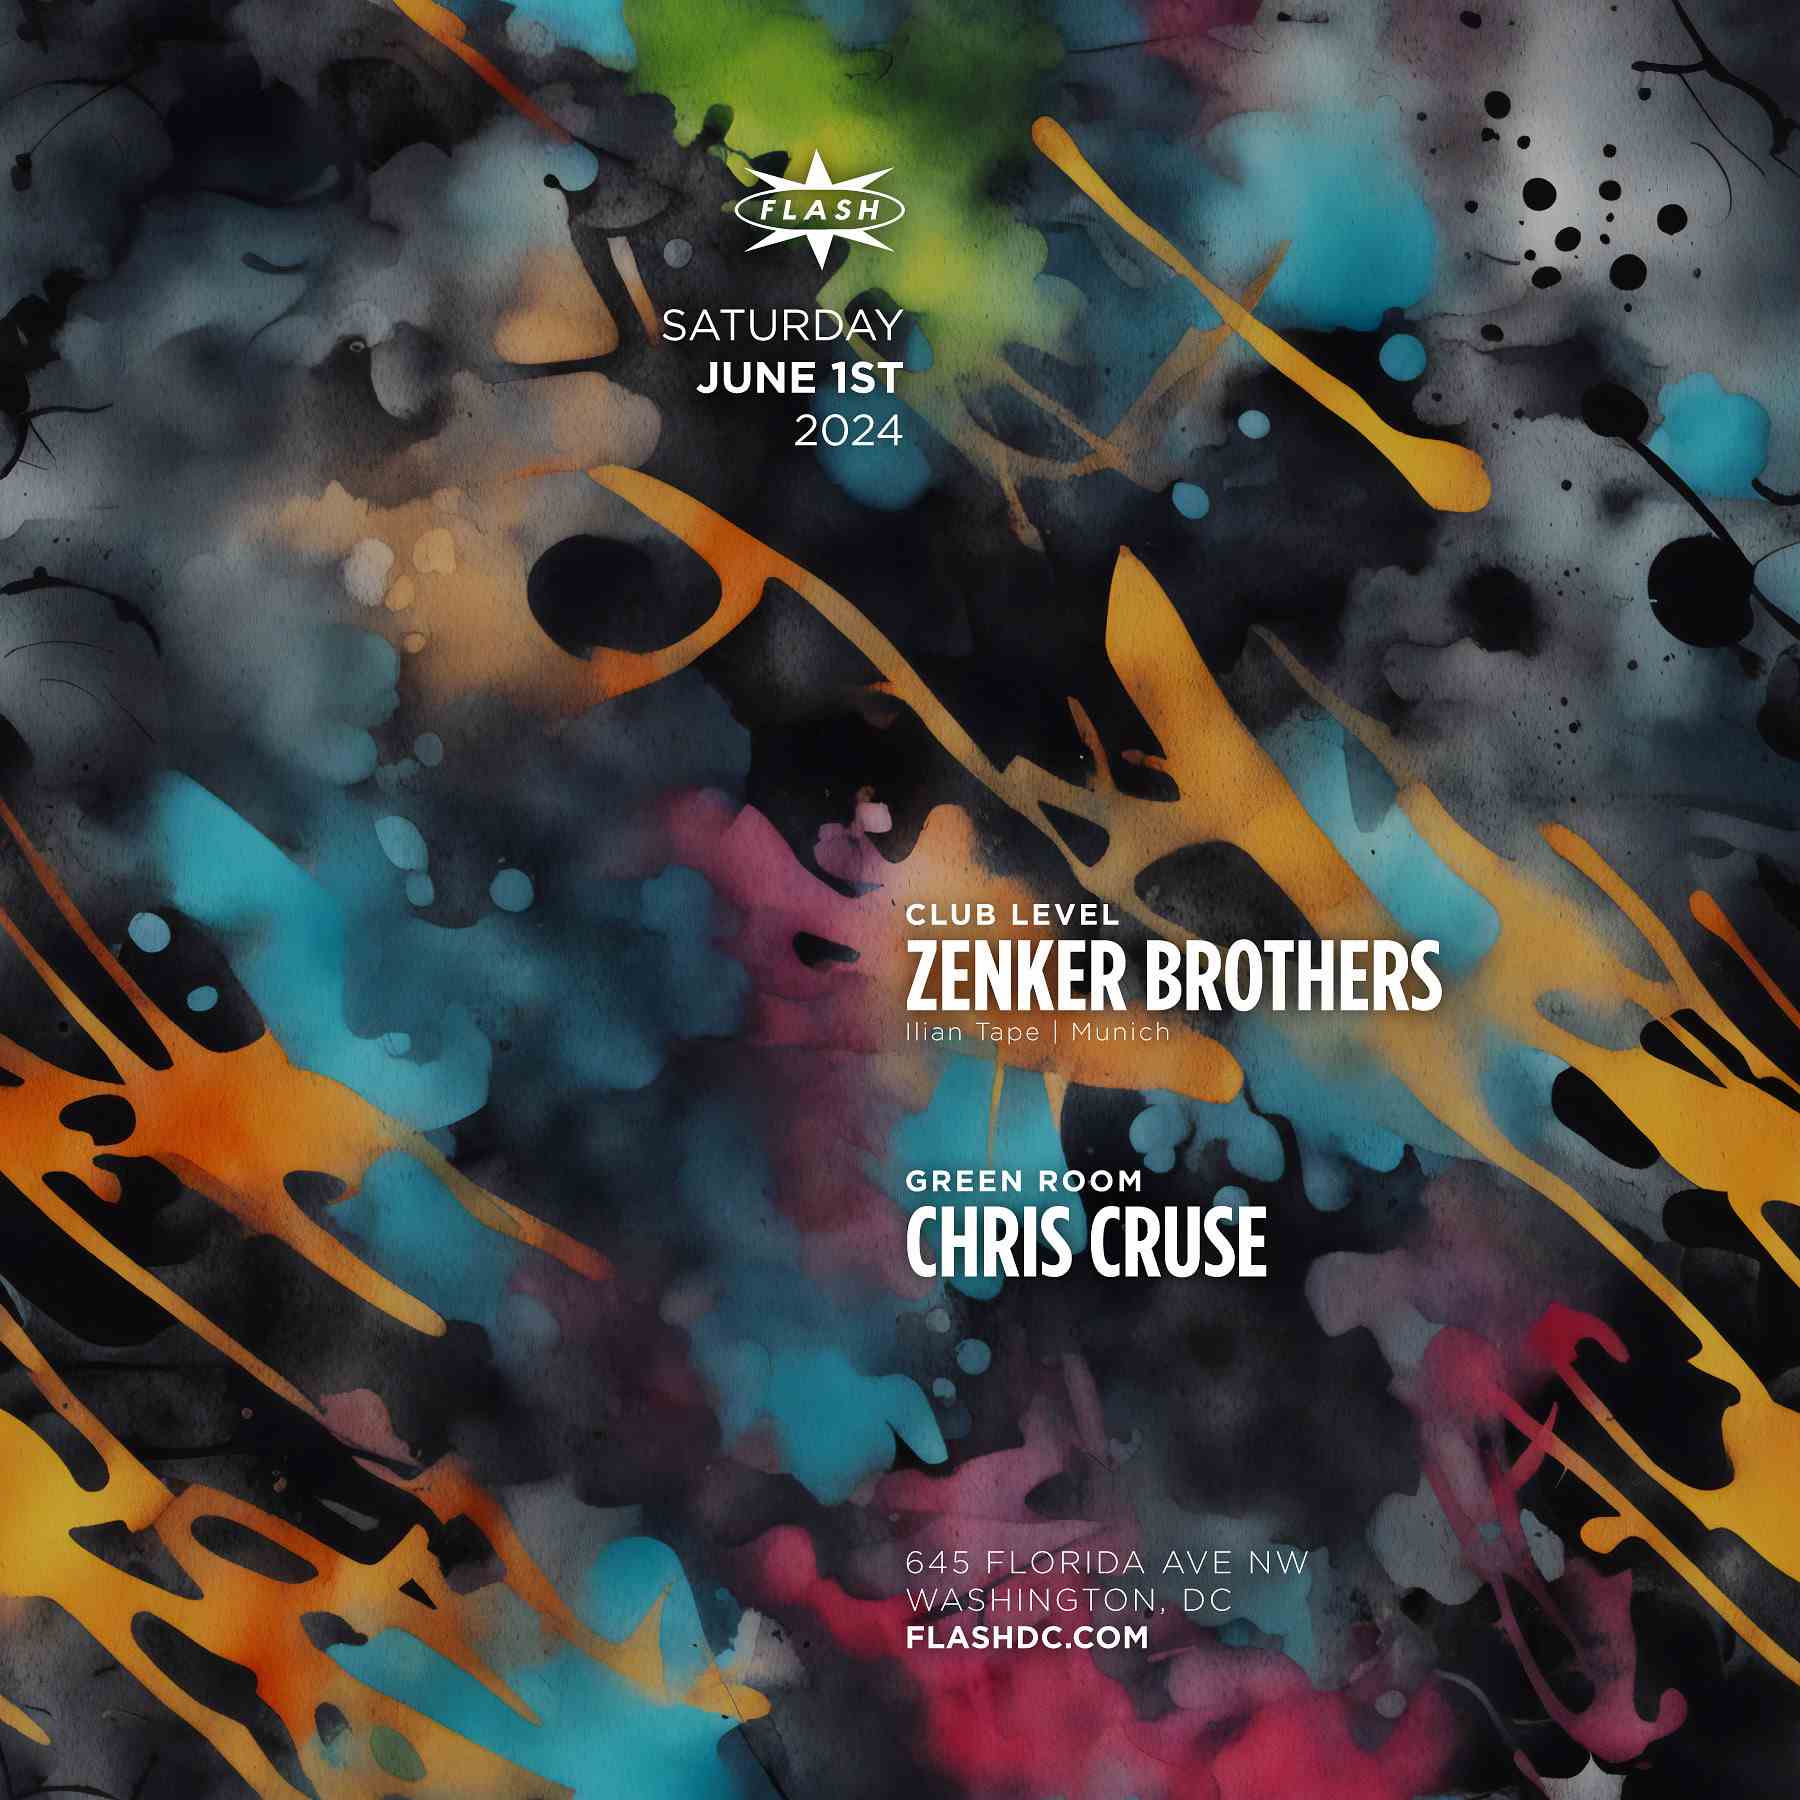 Zenker Brothers - Chris Cruse event flyer